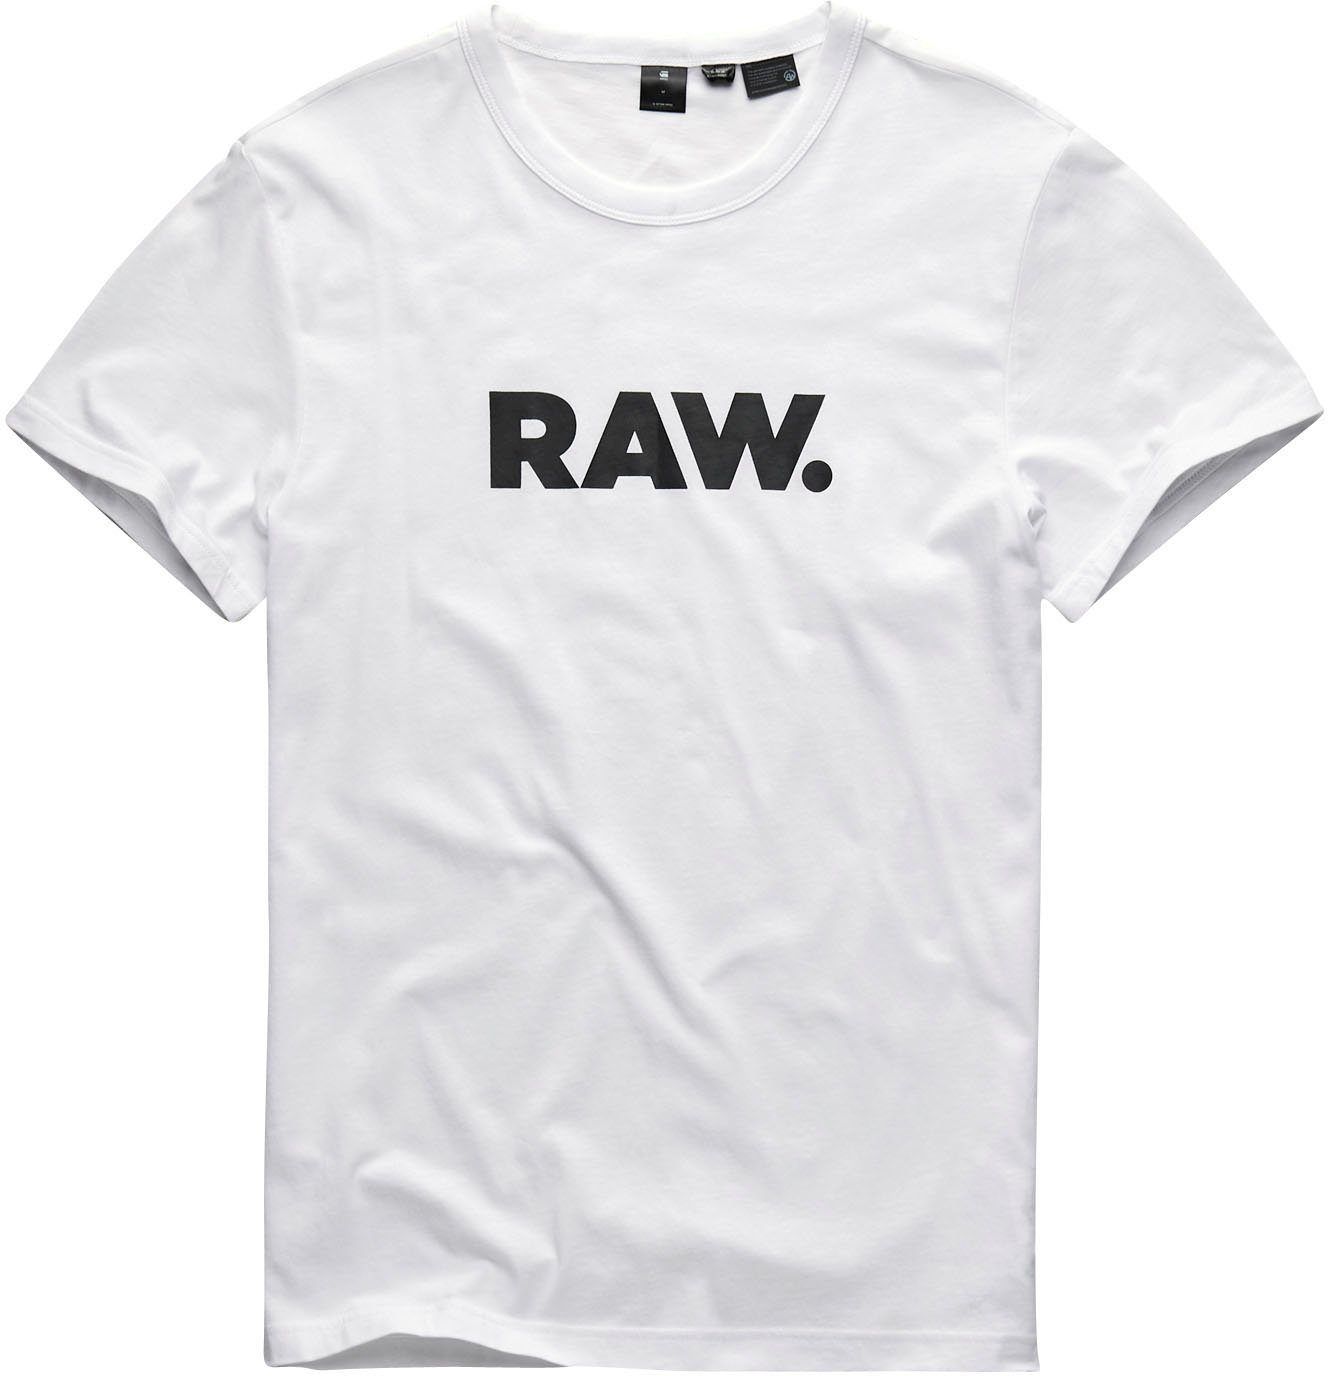 G STAR RAW Herren Holorn T Shirt für 14,95€ (statt 23€)   Prime